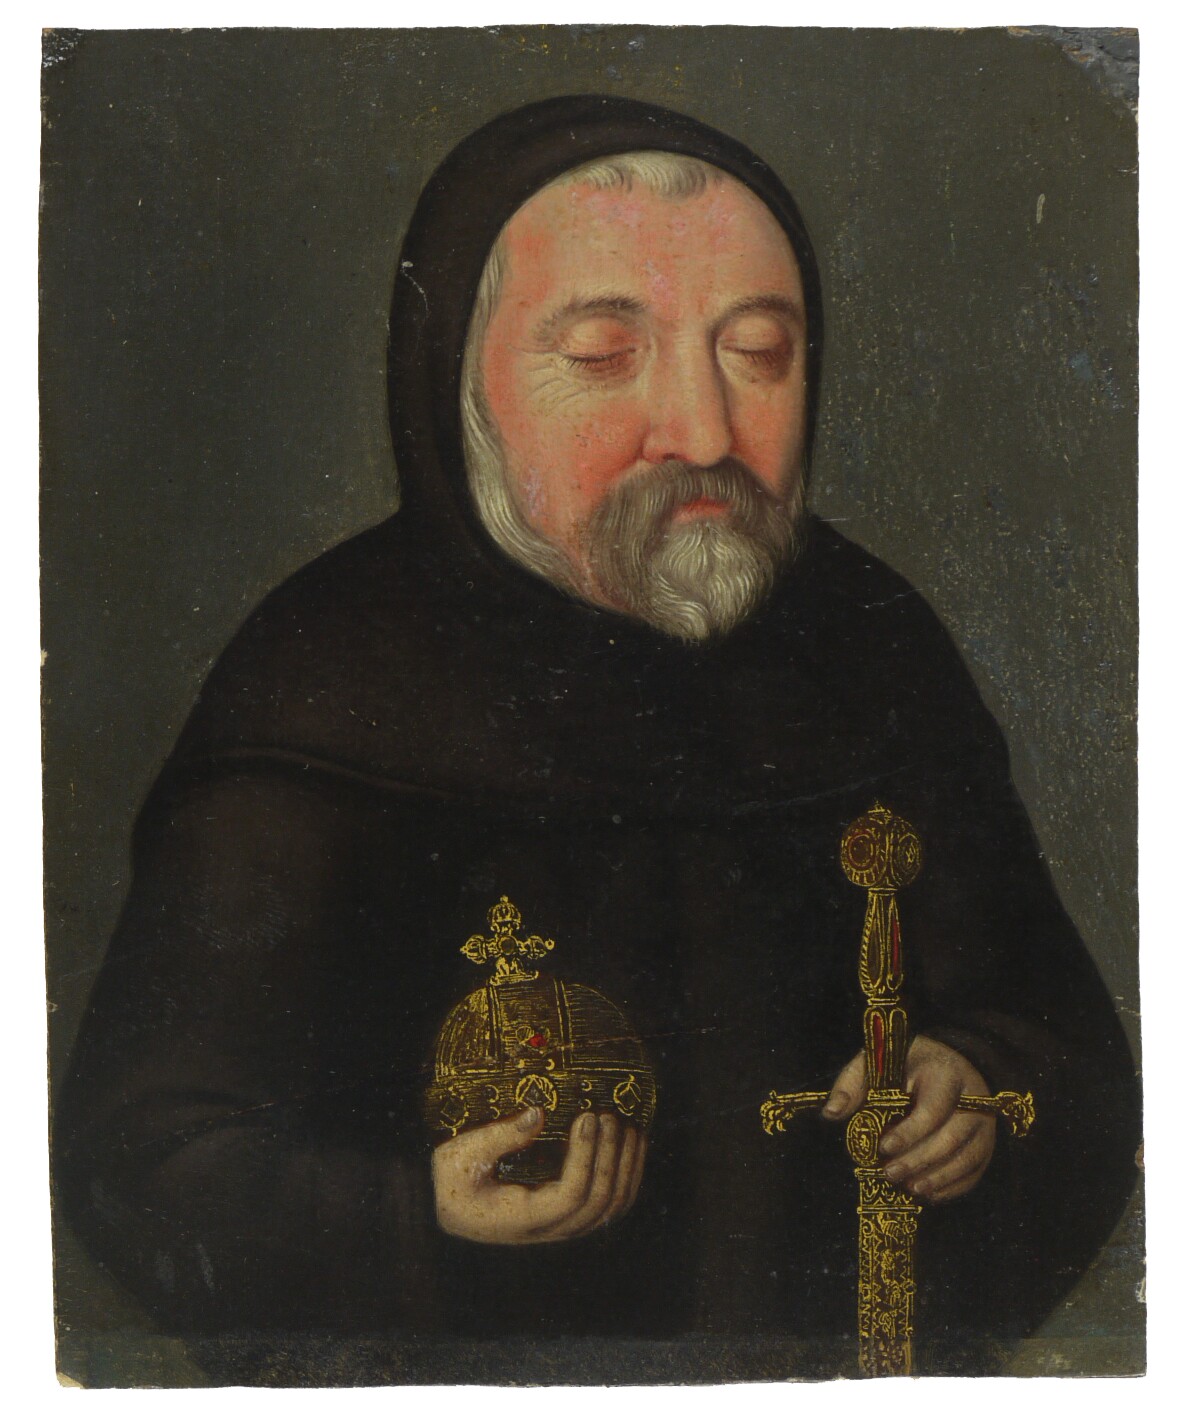 Totenbildnis Kurfürst Friedrich III. des Frommen von der Pfalz (Historisches Museum der Pfalz, Speyer CC BY)